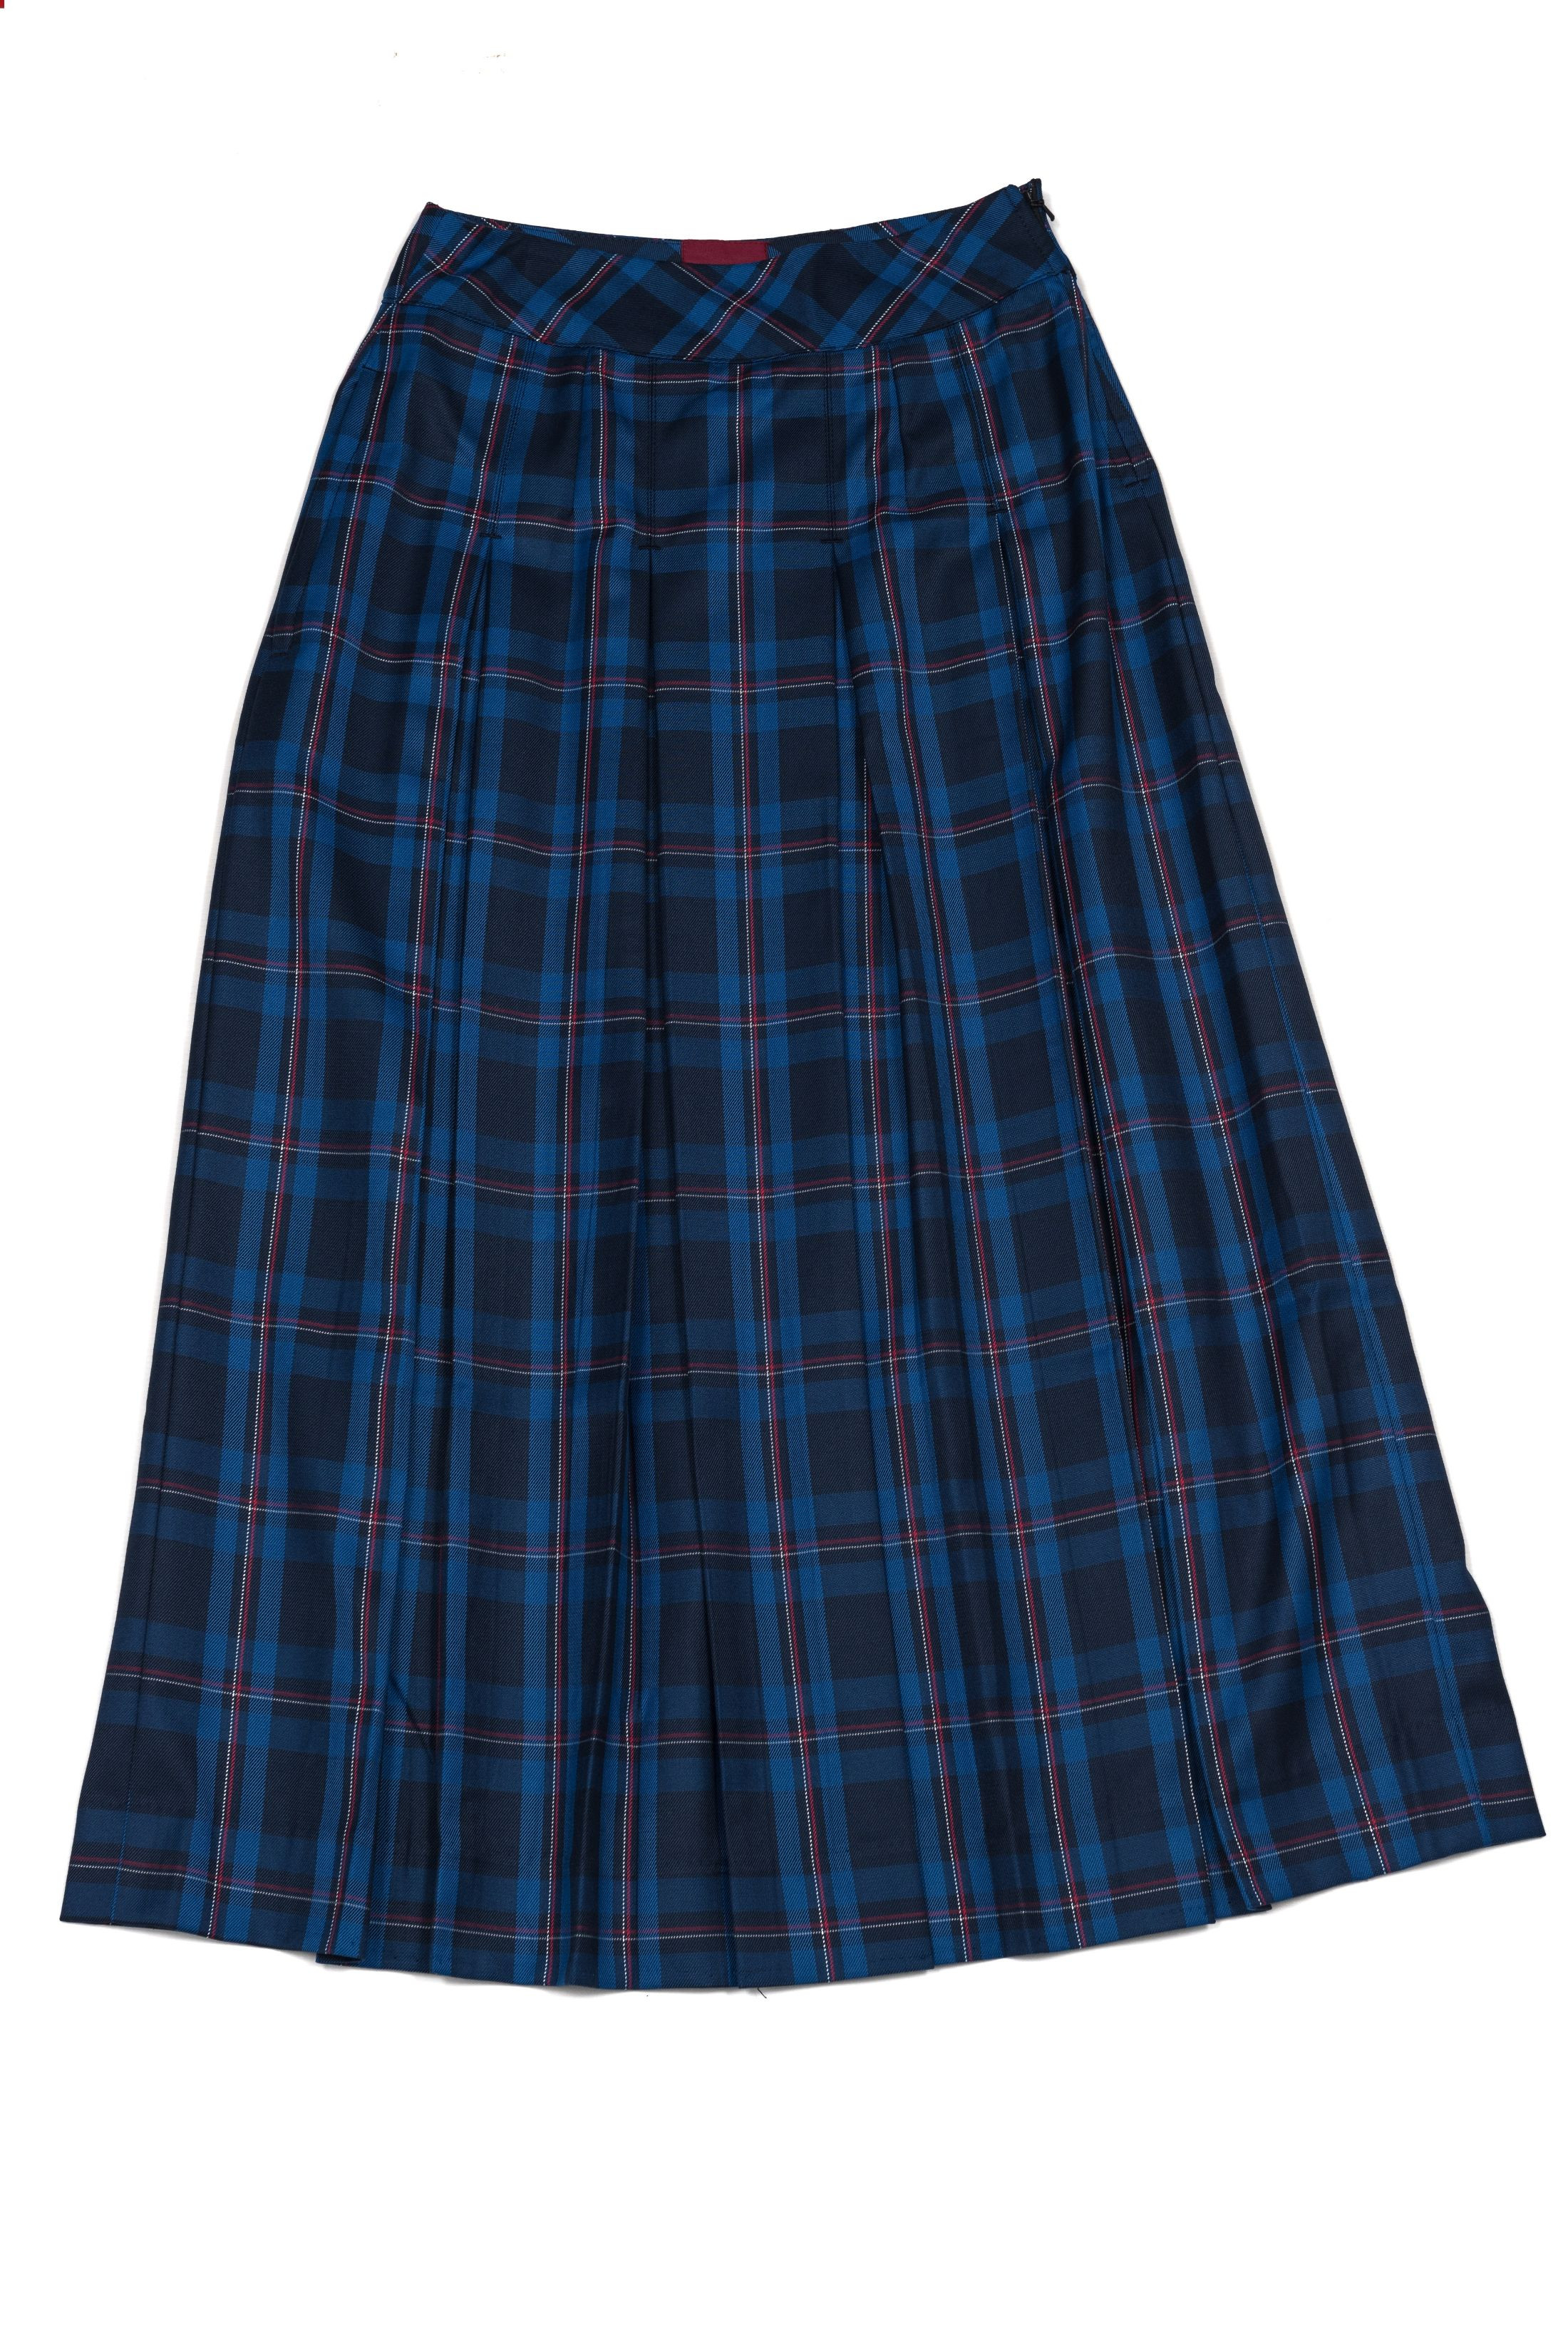 Senior Girls Winter Skirt • Senior Secondary - Girls • Store • Beth